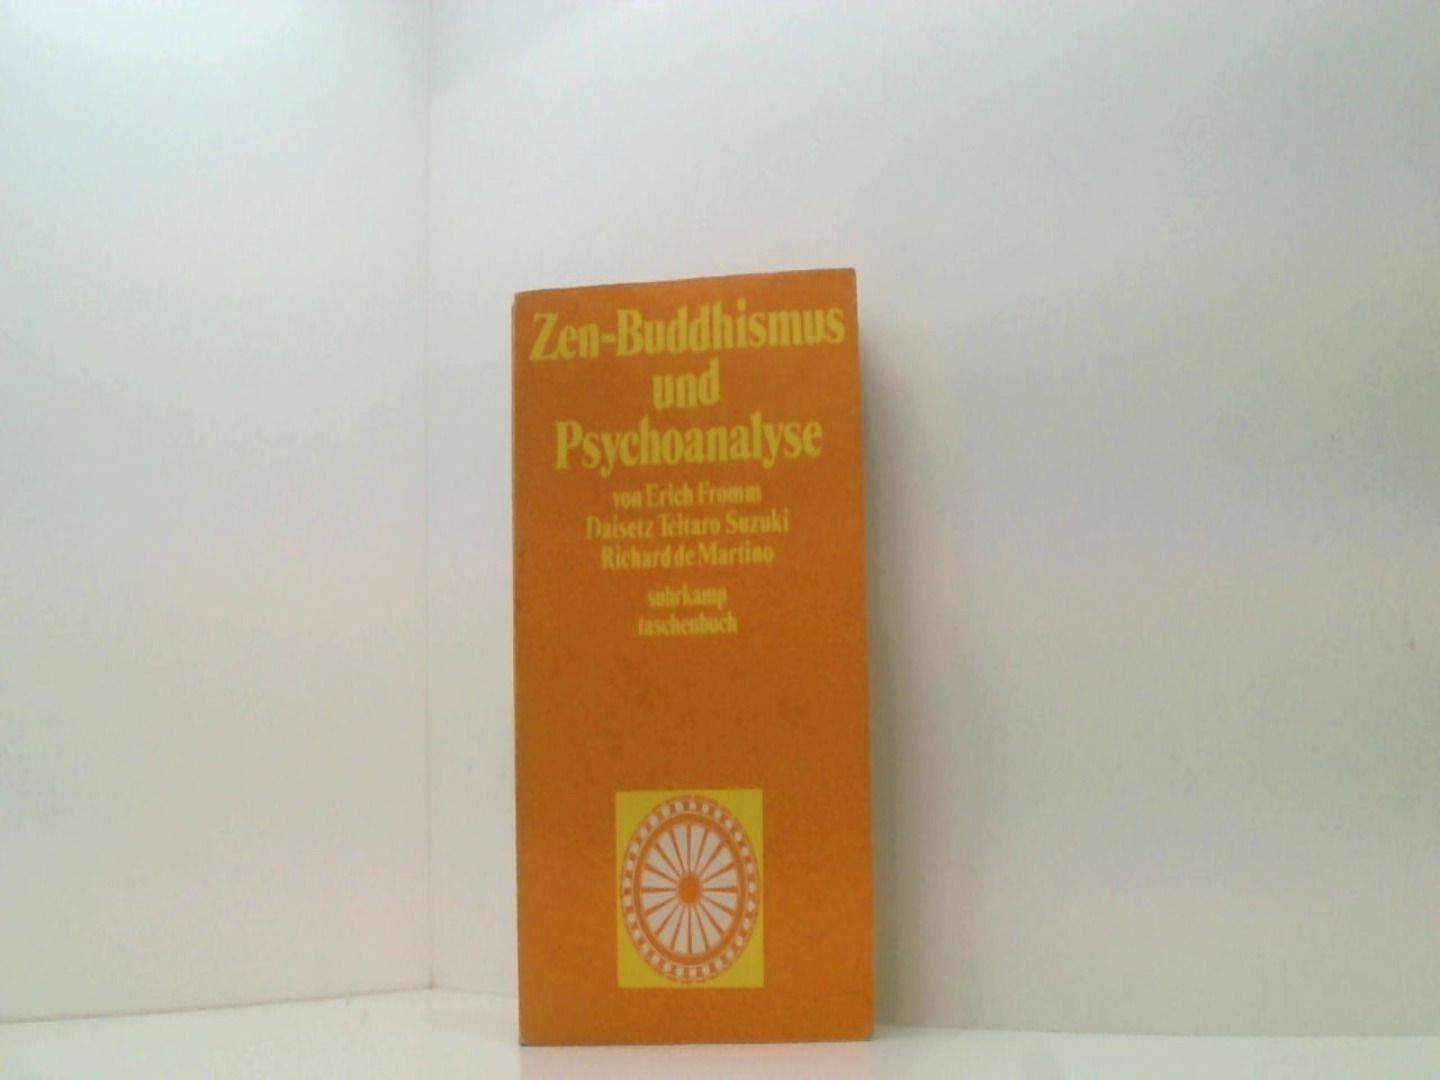 Zen-Buddhismus und Psychoanalyse. - Erich, Fromm, Suzuki Daisetz Teitaro  und Martino Richard de